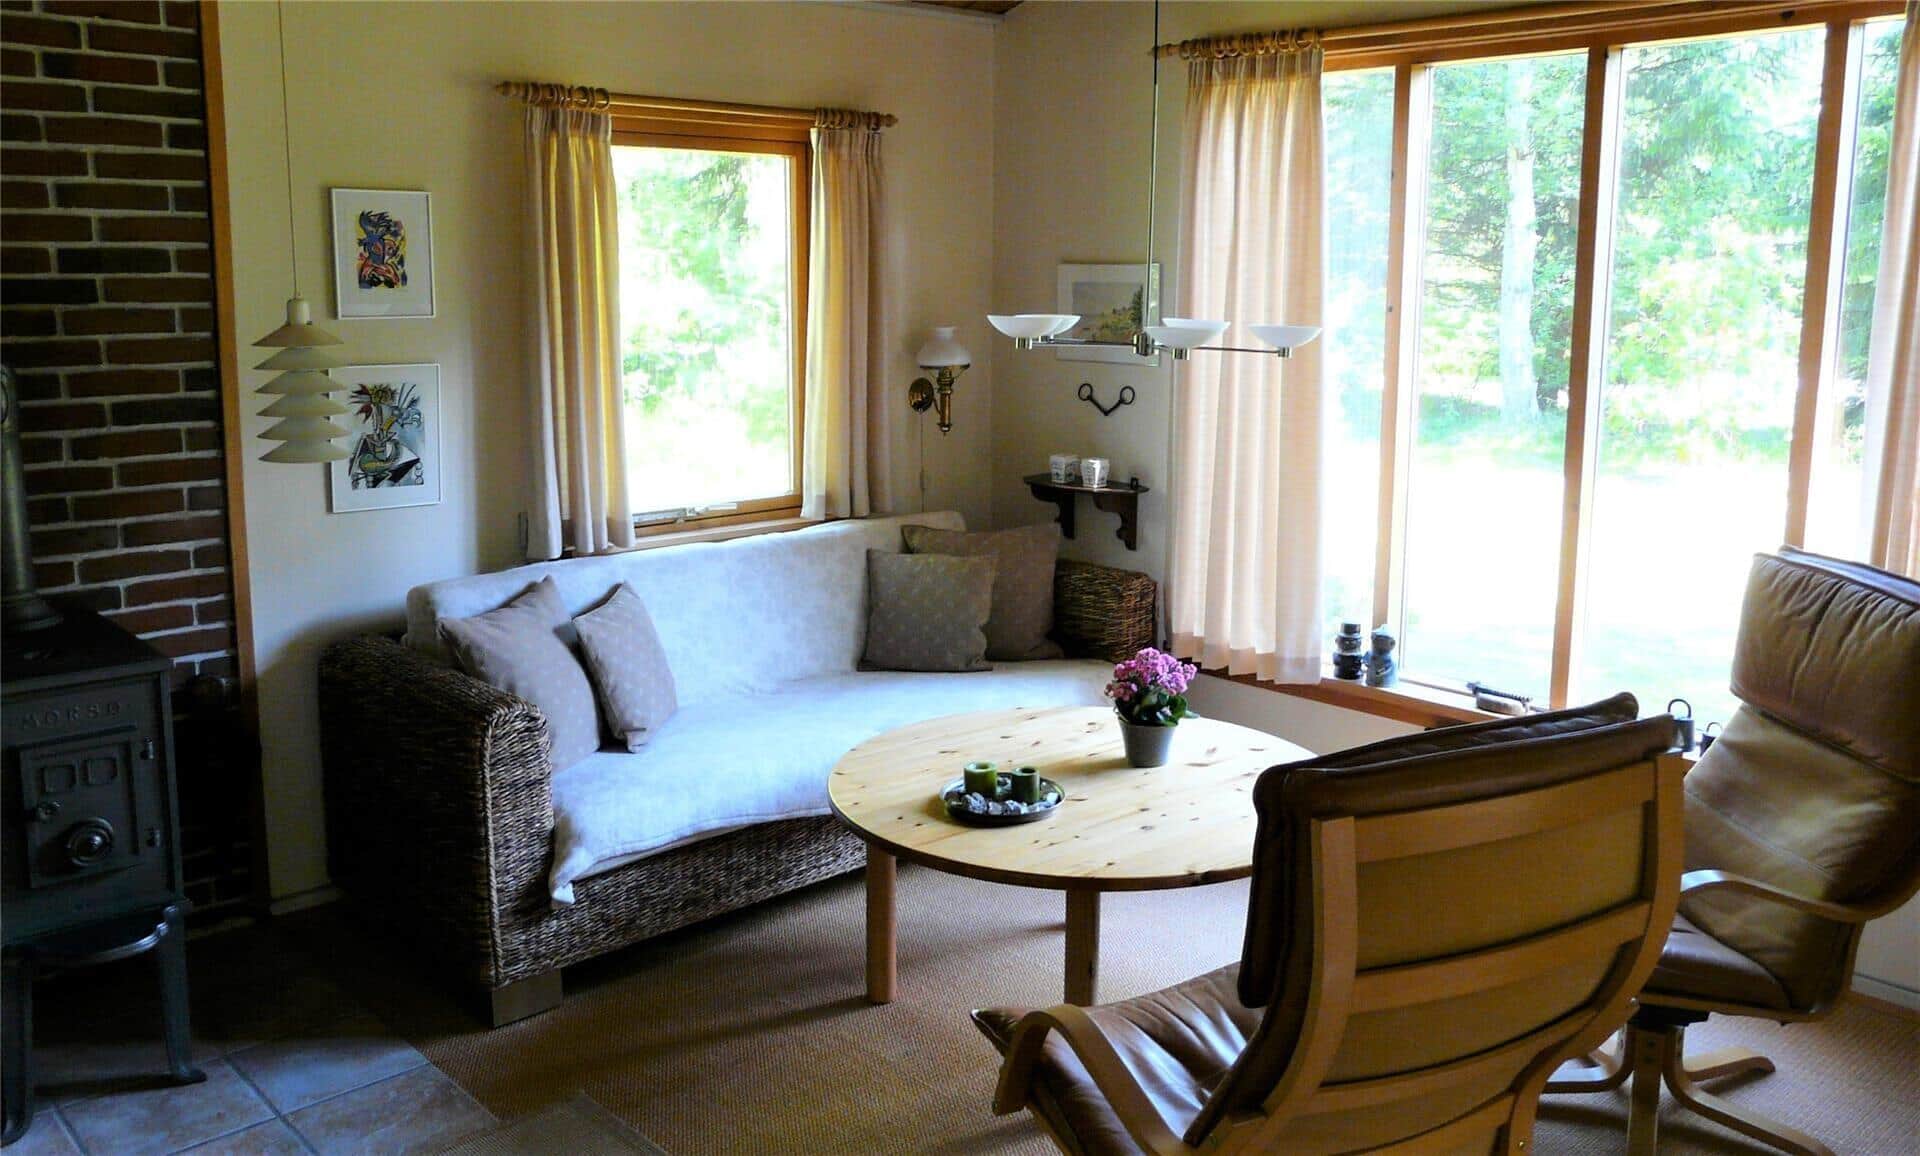 Livingroom 1 Image 1-17 Holiday-home 10005, Chr Petersensvej 23, DK - 4500 Nykøbing Sj